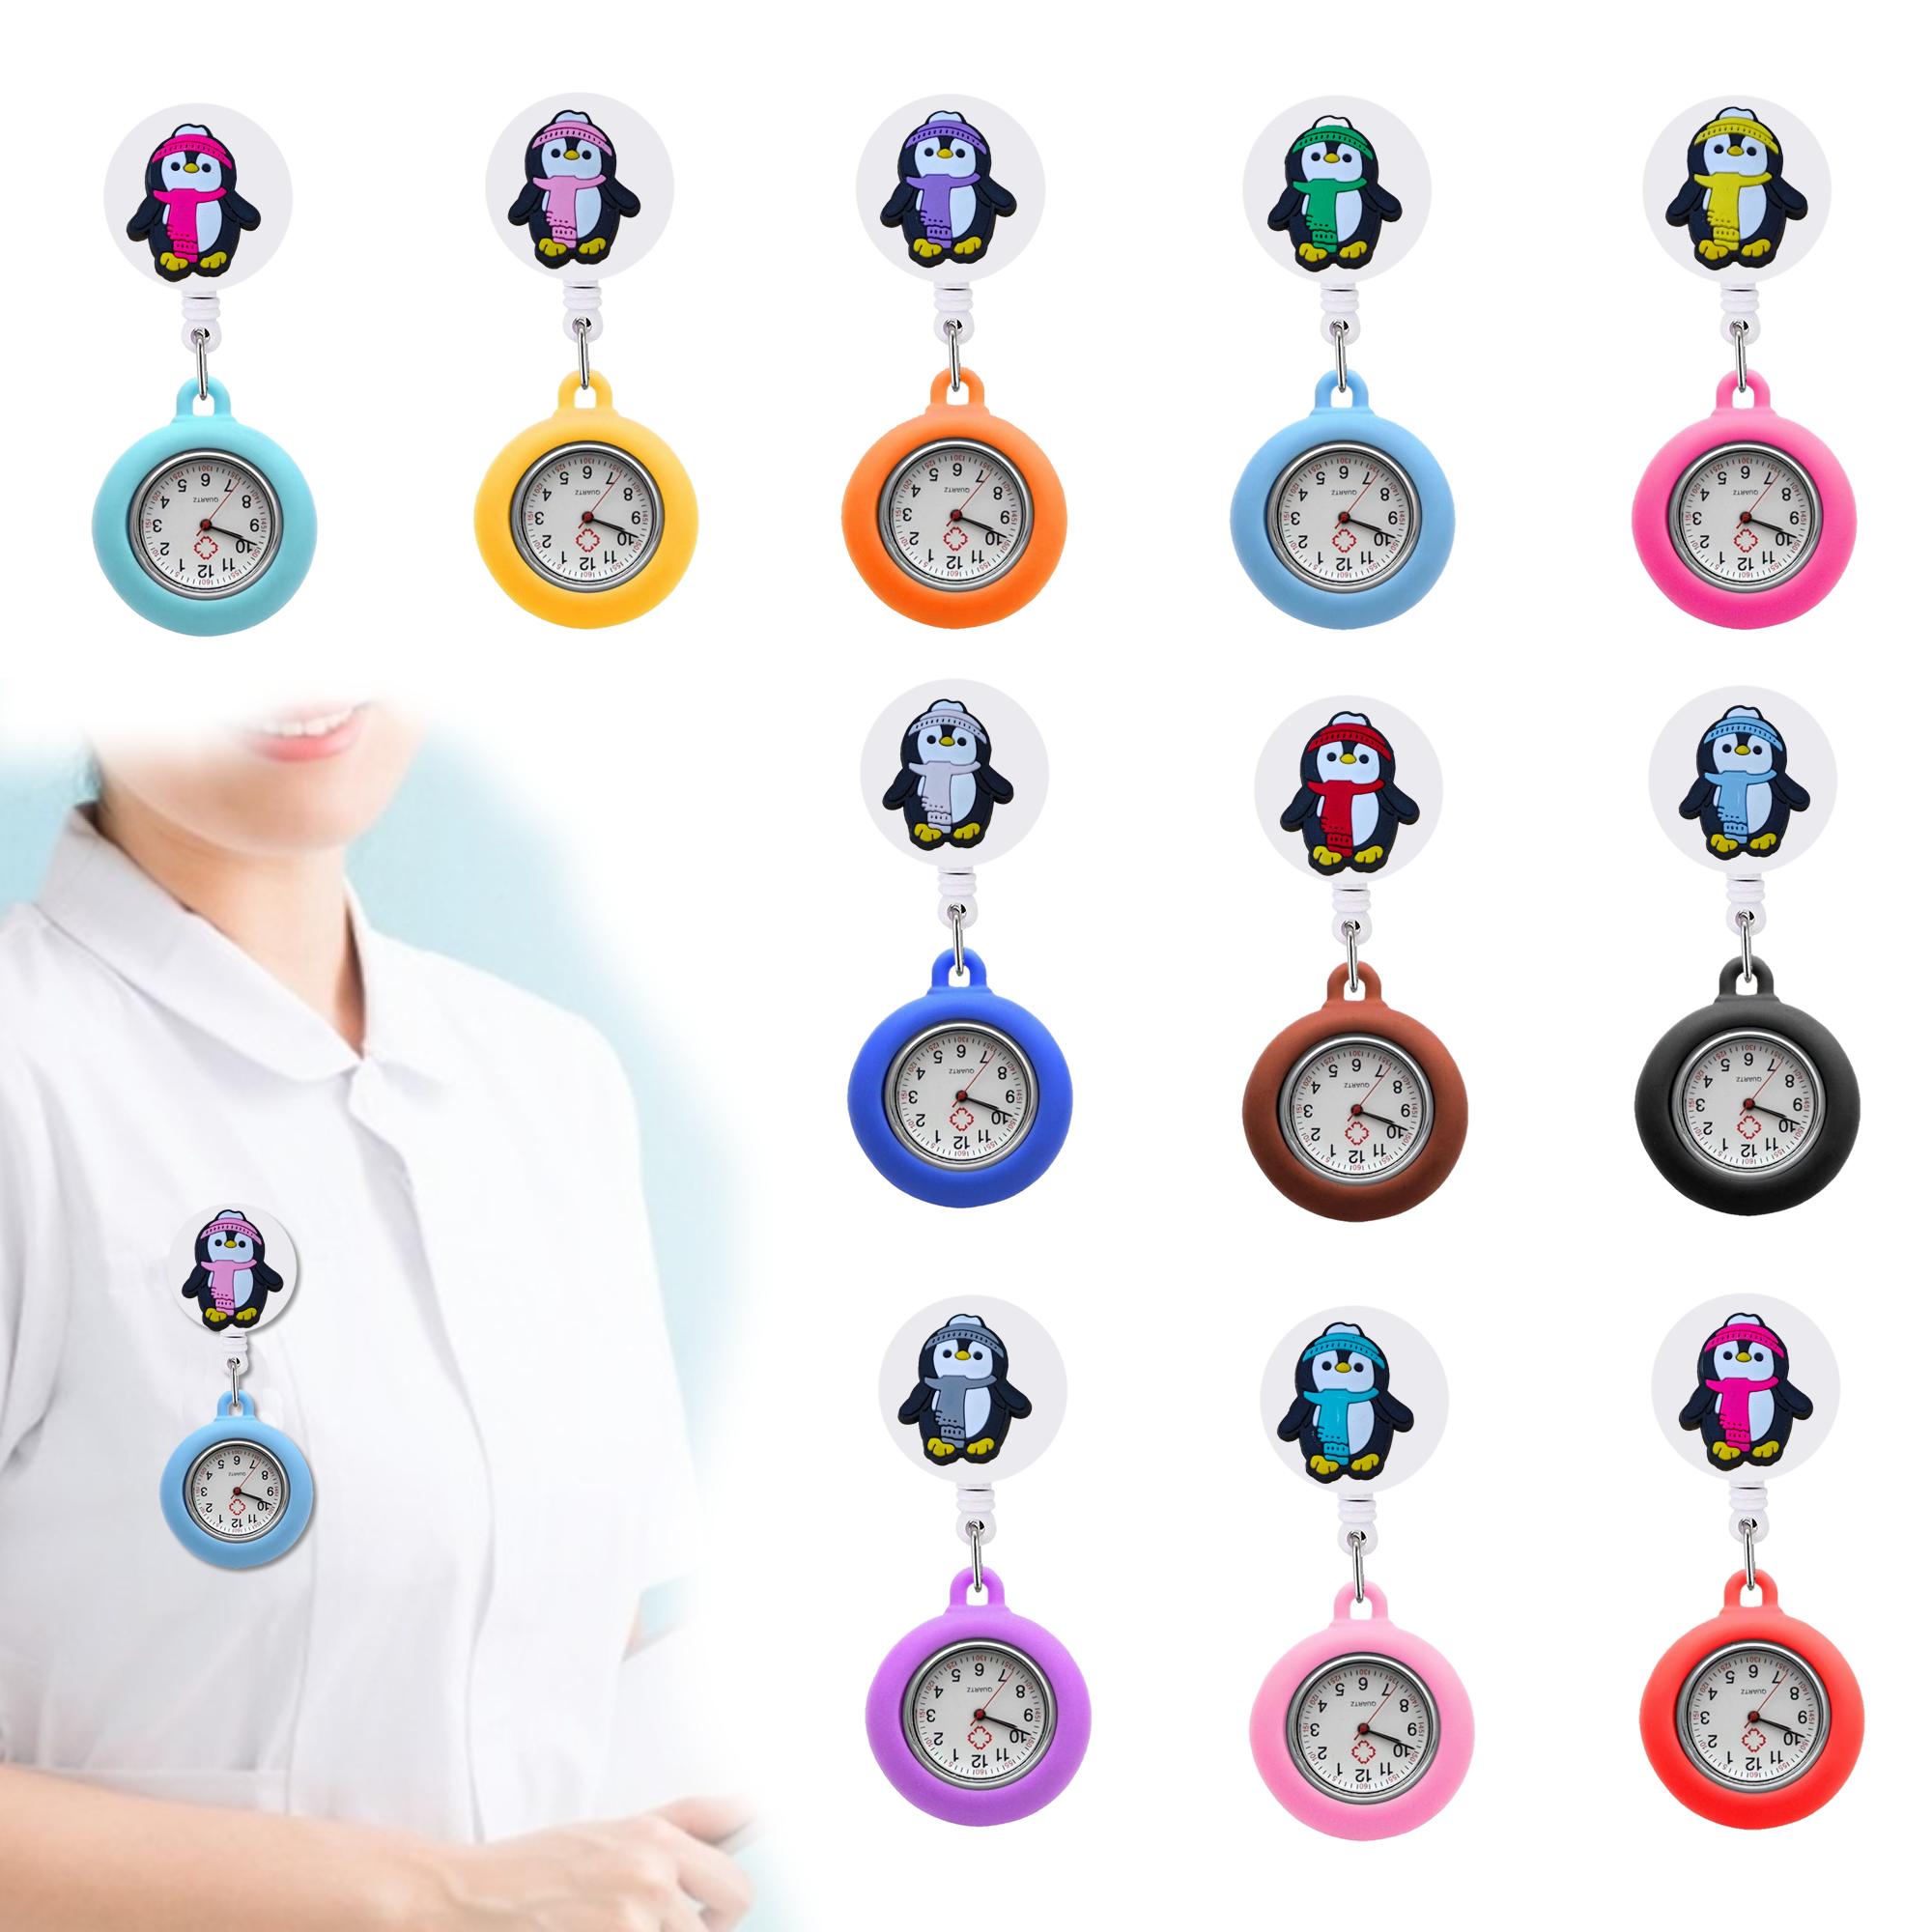 Altri accessori di moda pinguin clip tasca orologio da donna infermiere on watch for infermiere dottori sile spillo fob fob bavaglio medico drop deli oth8p